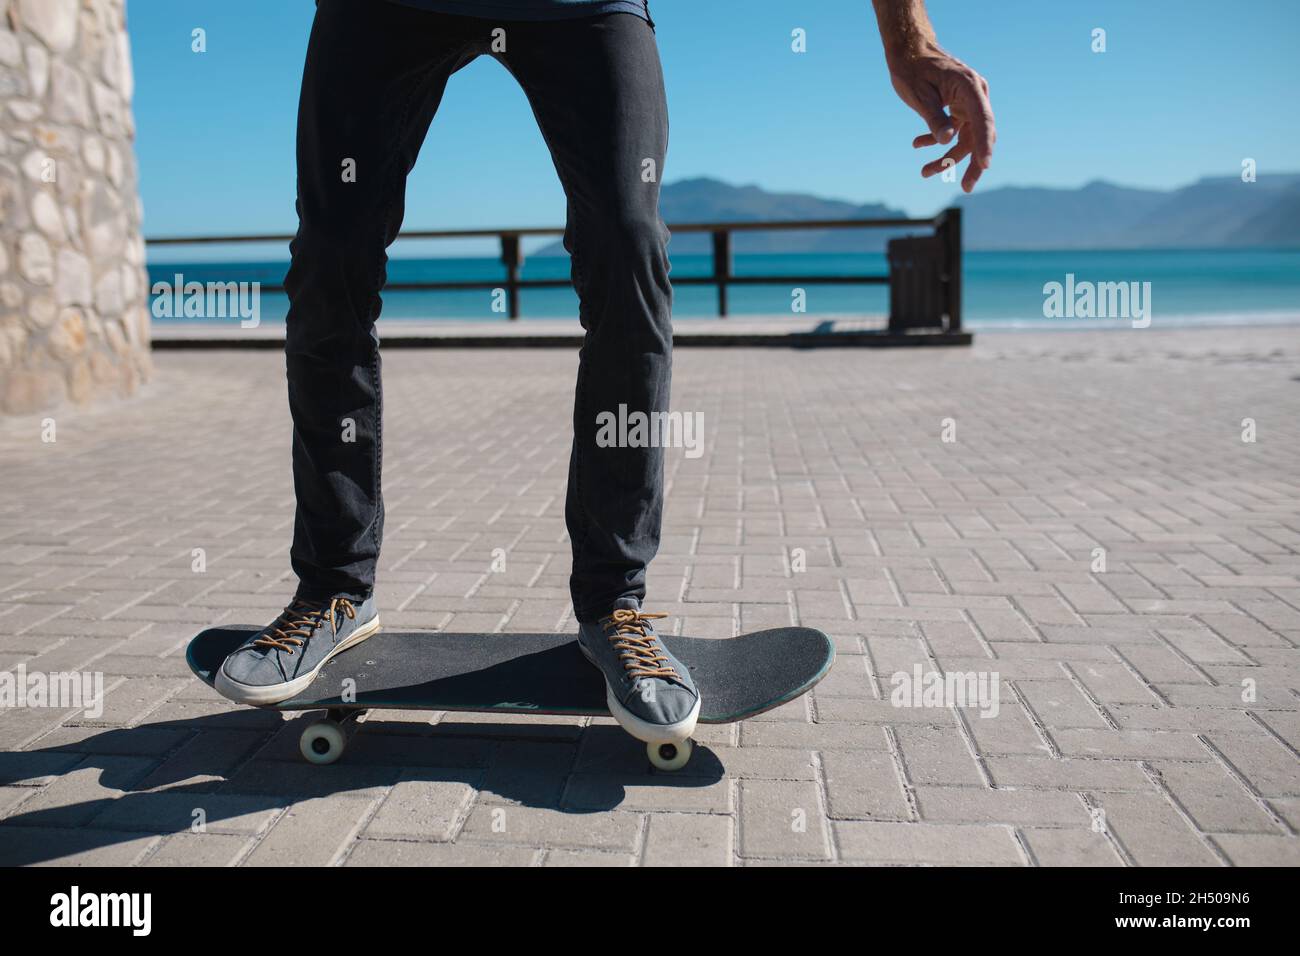 Partie basse de l'homme skate sur la promenade contre le ciel pendant la journée ensoleillée Banque D'Images